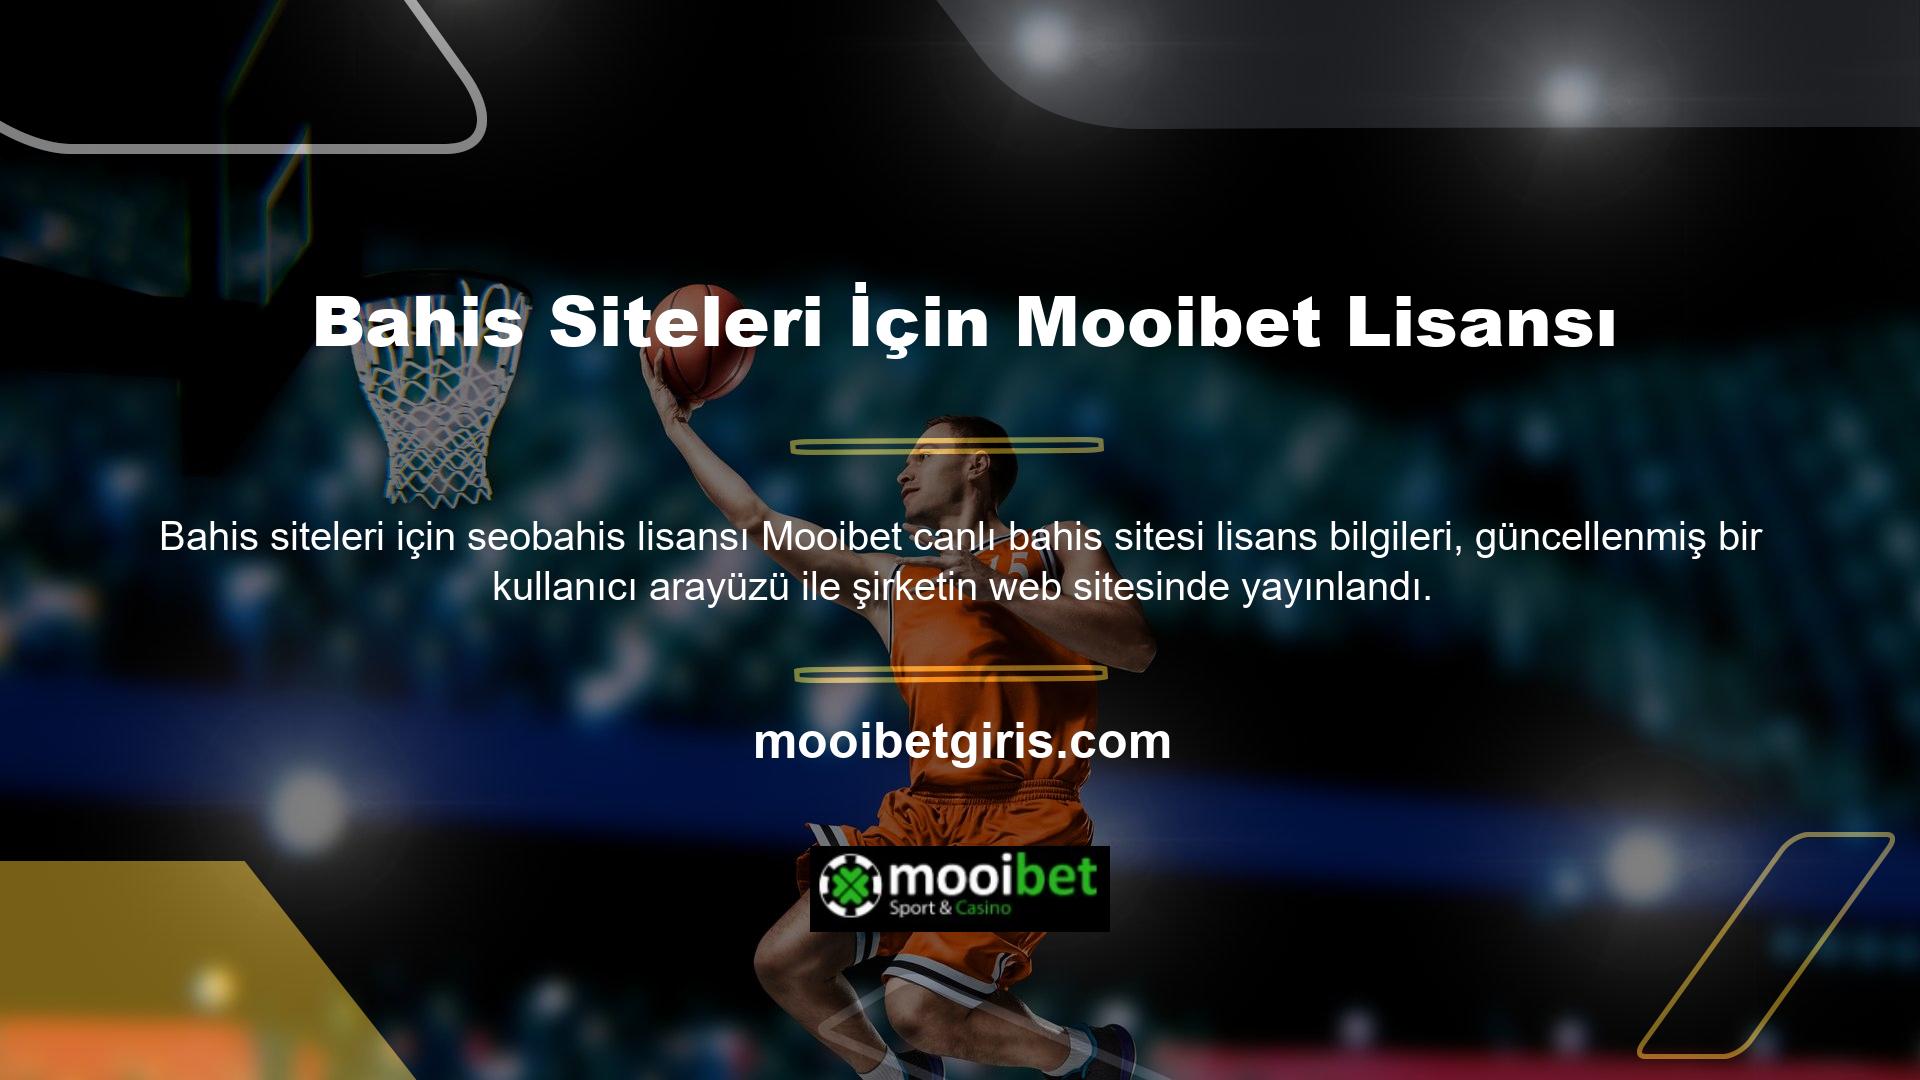 Mooibet, online bahis sitesi avantajları ile müşterilerini memnun eden bahis şirketlerinden biridir